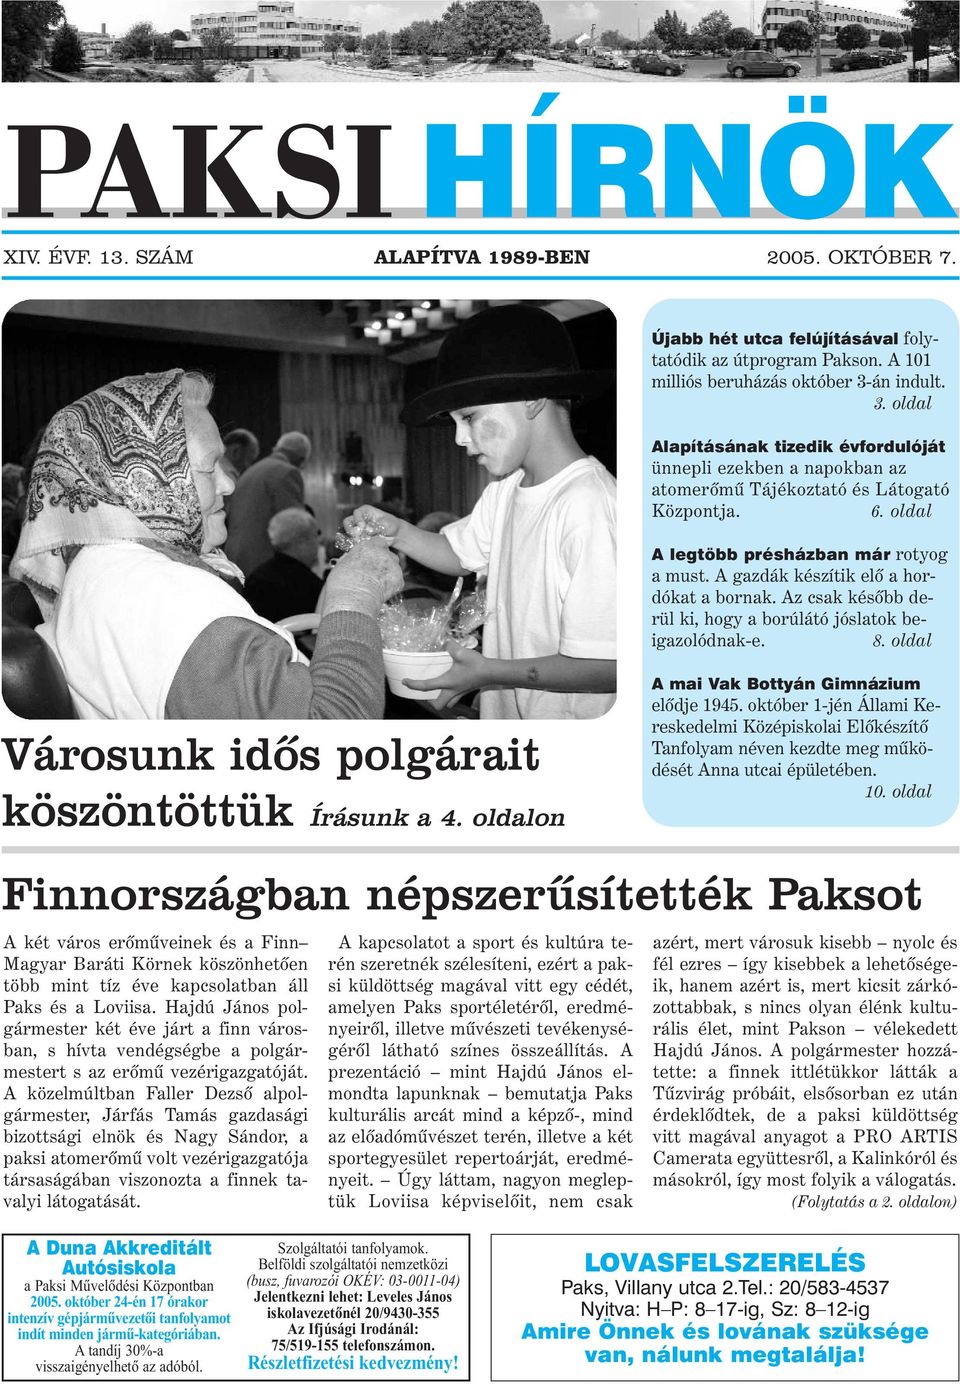 Finnországban népszerûsítették Paksot - PDF Free Download